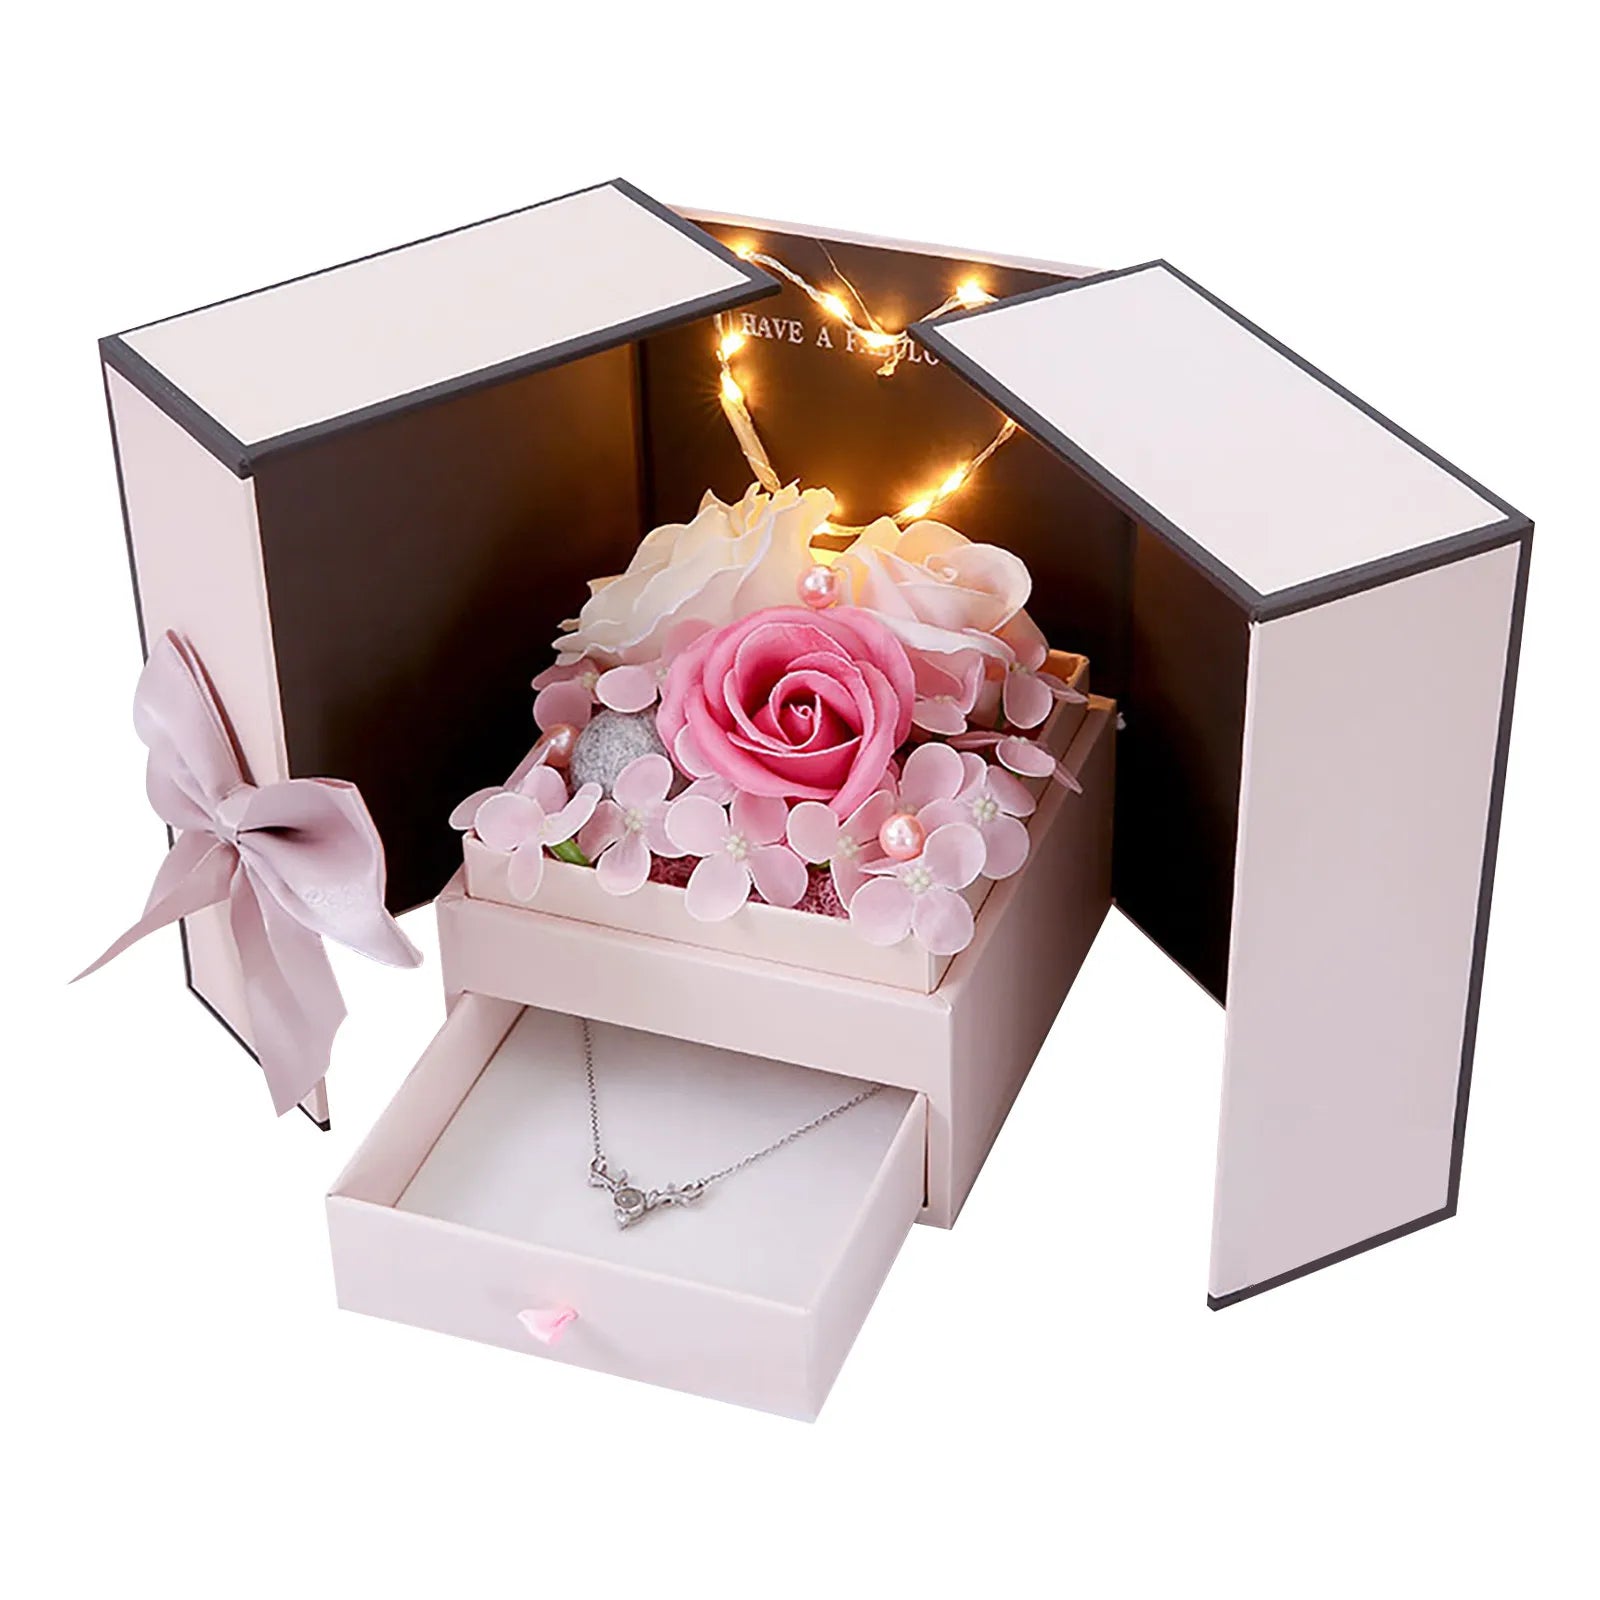 Pudełko na biżuterię pudełko pudełko pudełko pudełko pudełko pudełko bukiet prezent róży prezent walentynkowy kwiaty sztuczne kwiaty